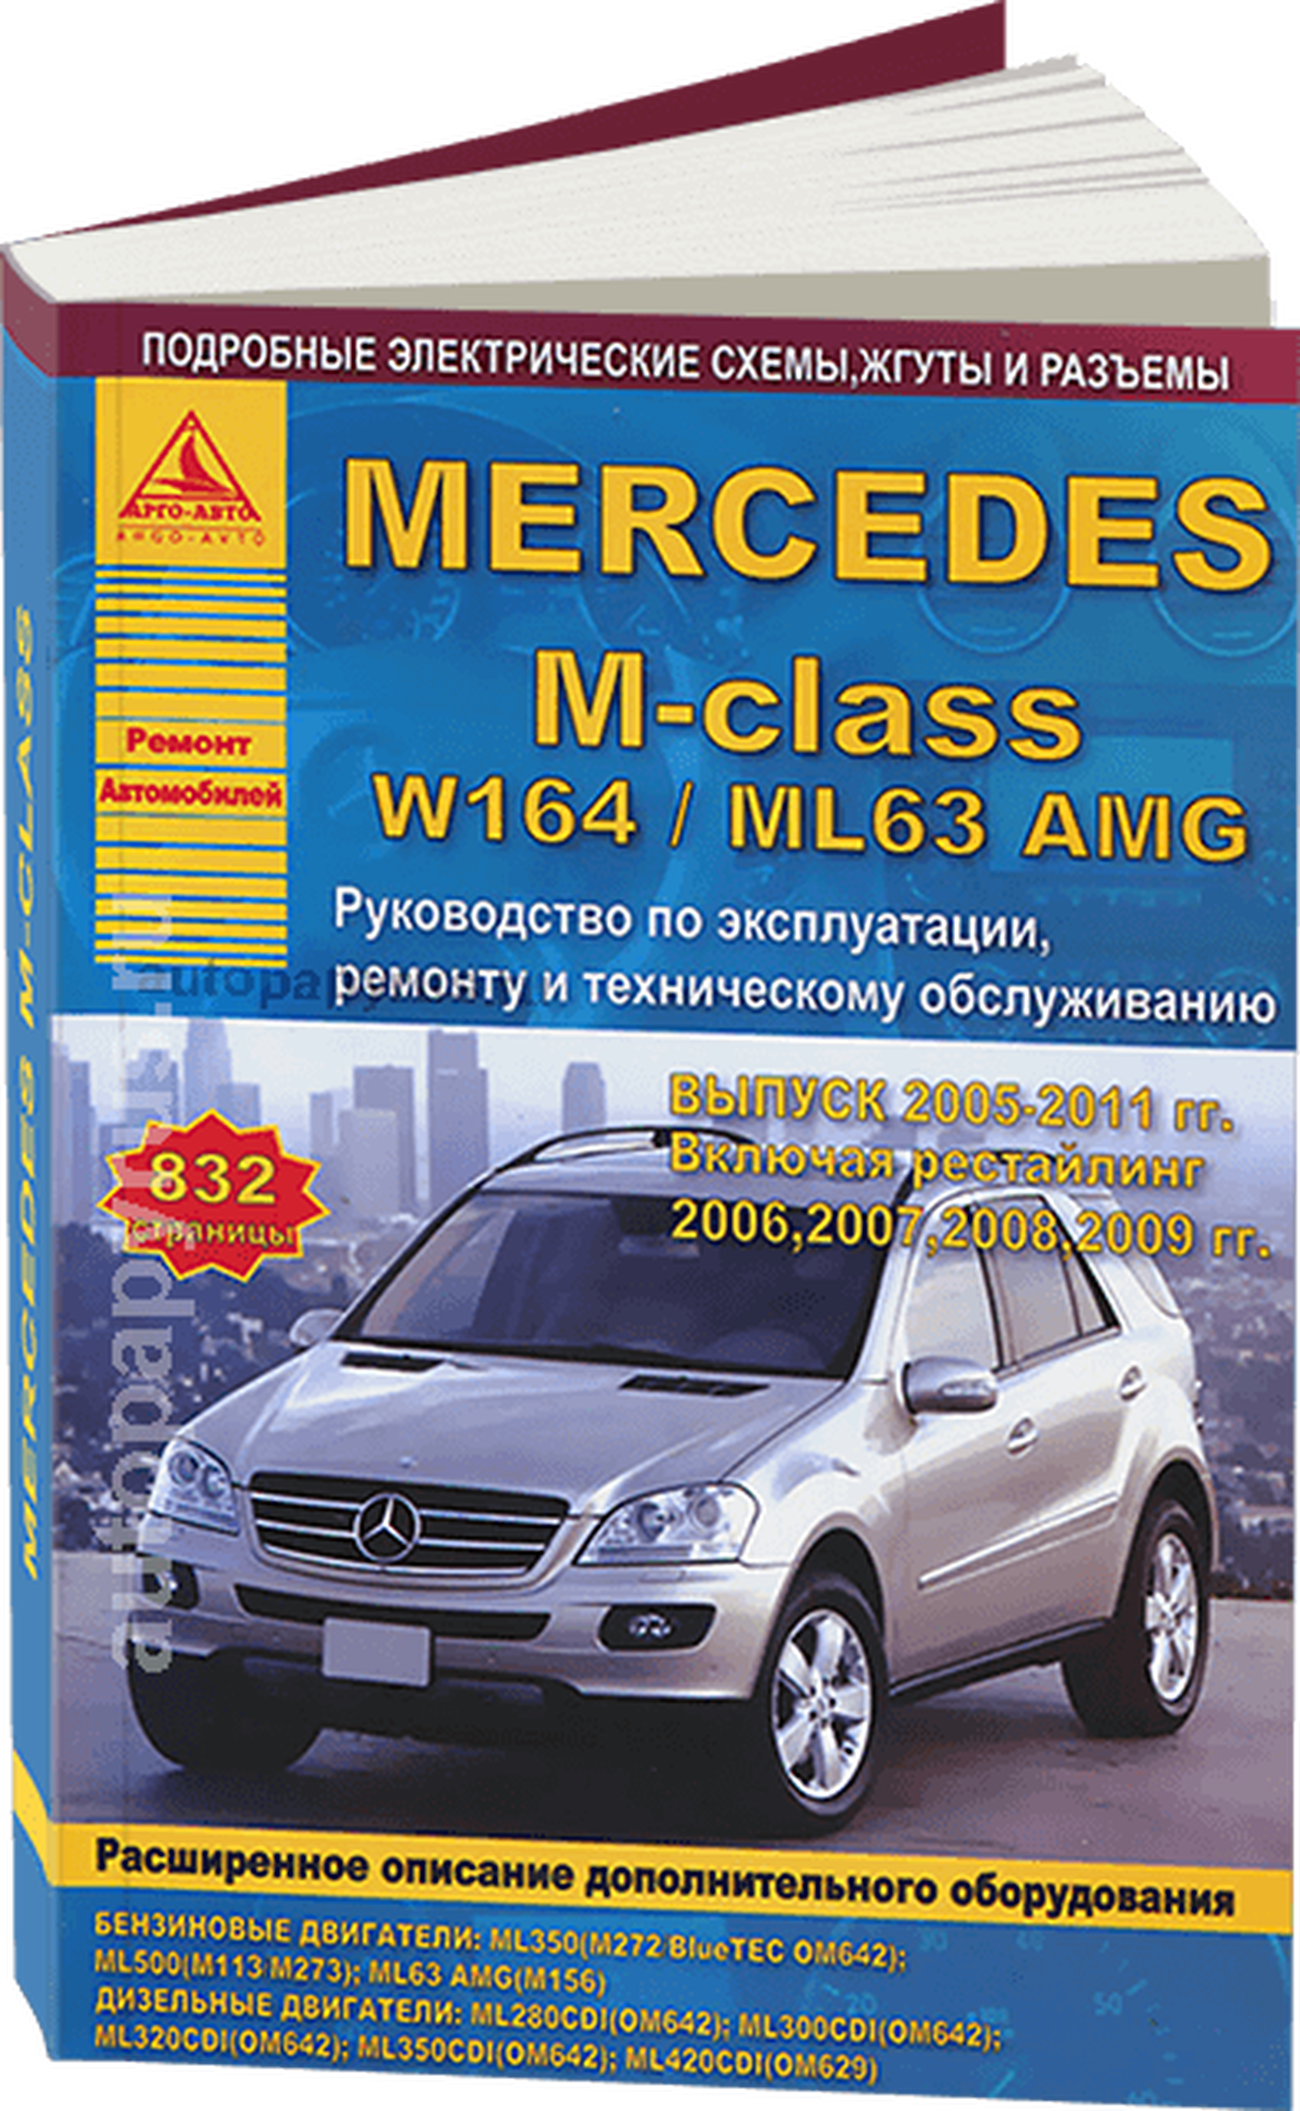 Книга: MERCEDES-BENZ M-CLASS (W-164 / ML63 AMG) (б , д) 2005-2011 г.в. рем., экспл., то | Арго-Авто